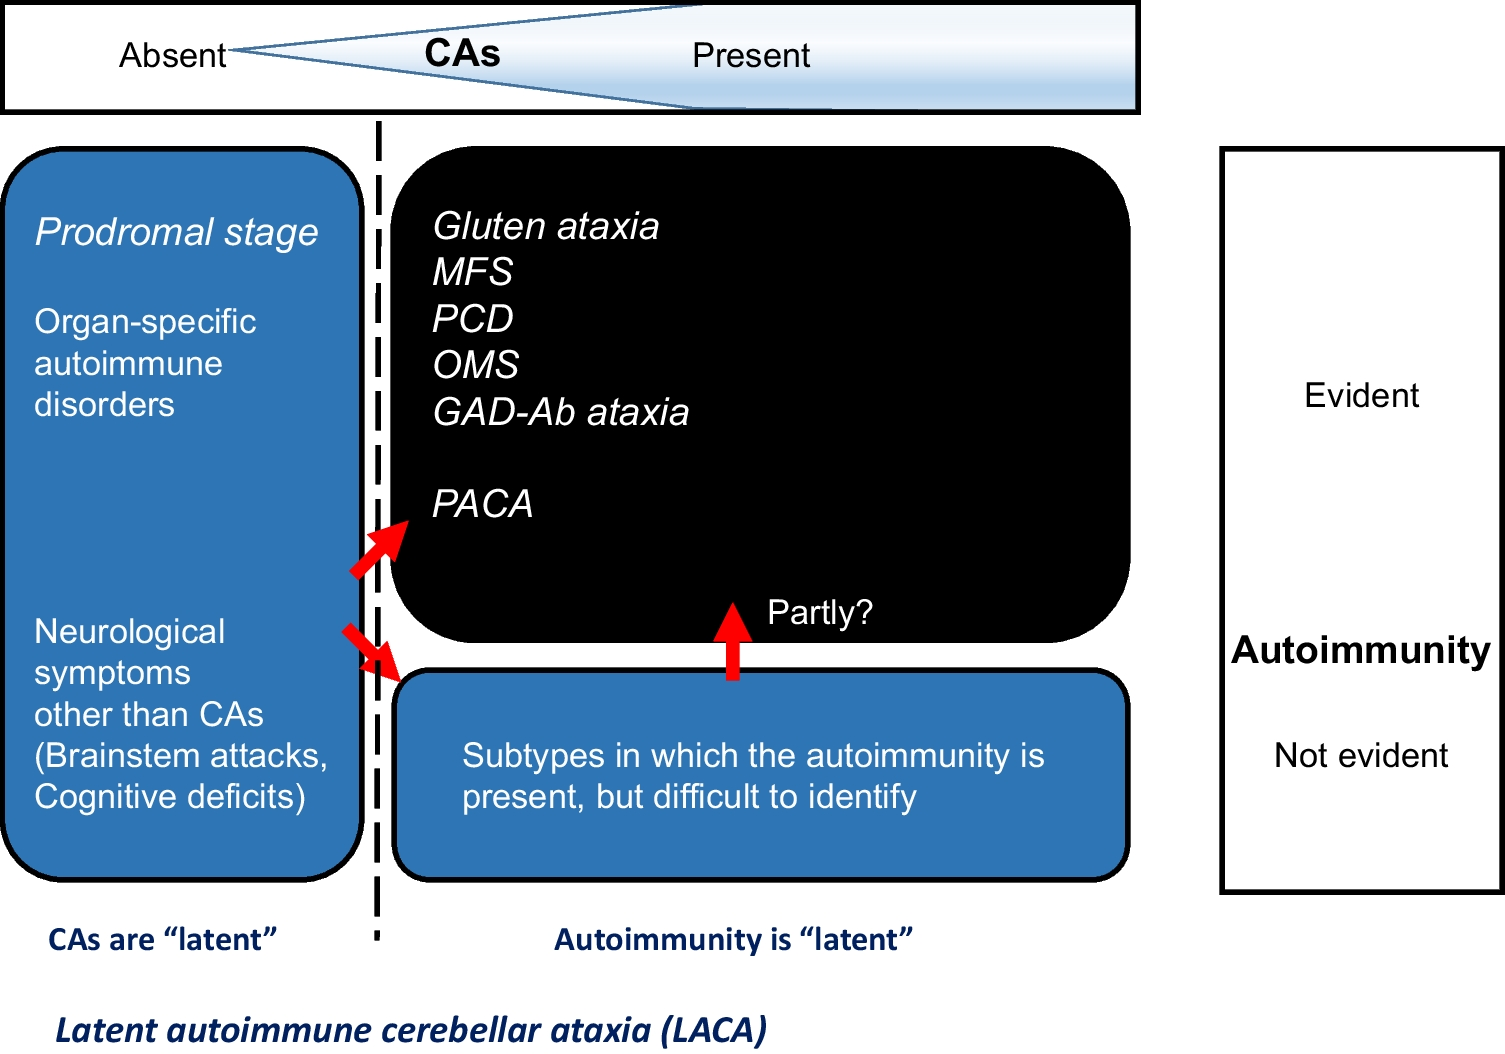 Consensus Paper: Latent Autoimmune Cerebellar Ataxia (LACA)